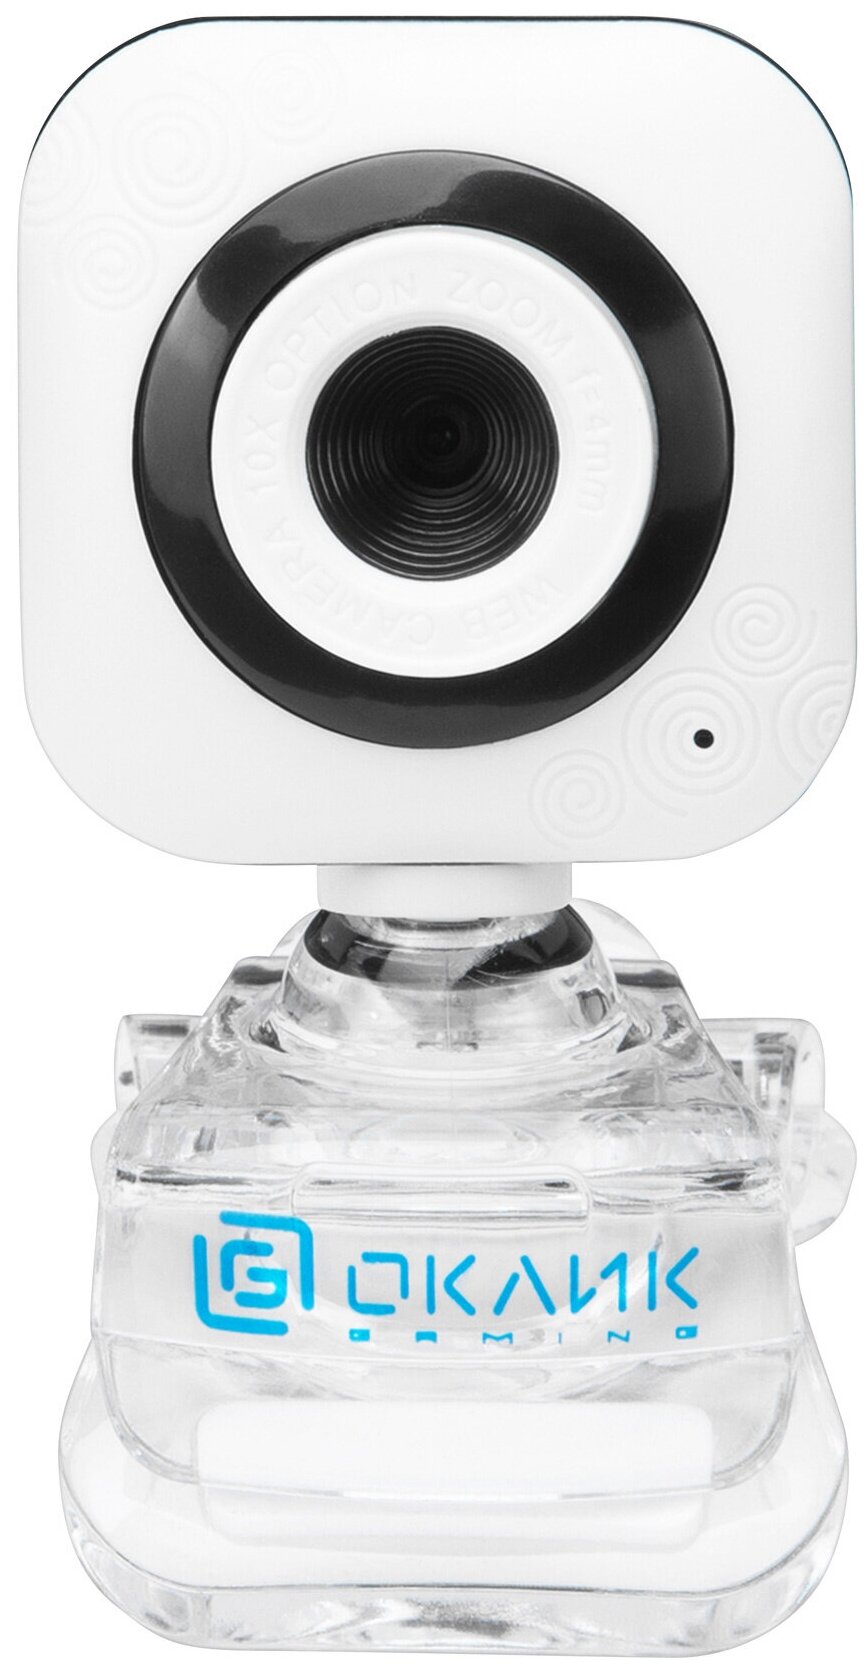 Камера Web Оклик OK-C8812 белый 0.3Mpix (640x480) USB2.0 с микрофоном